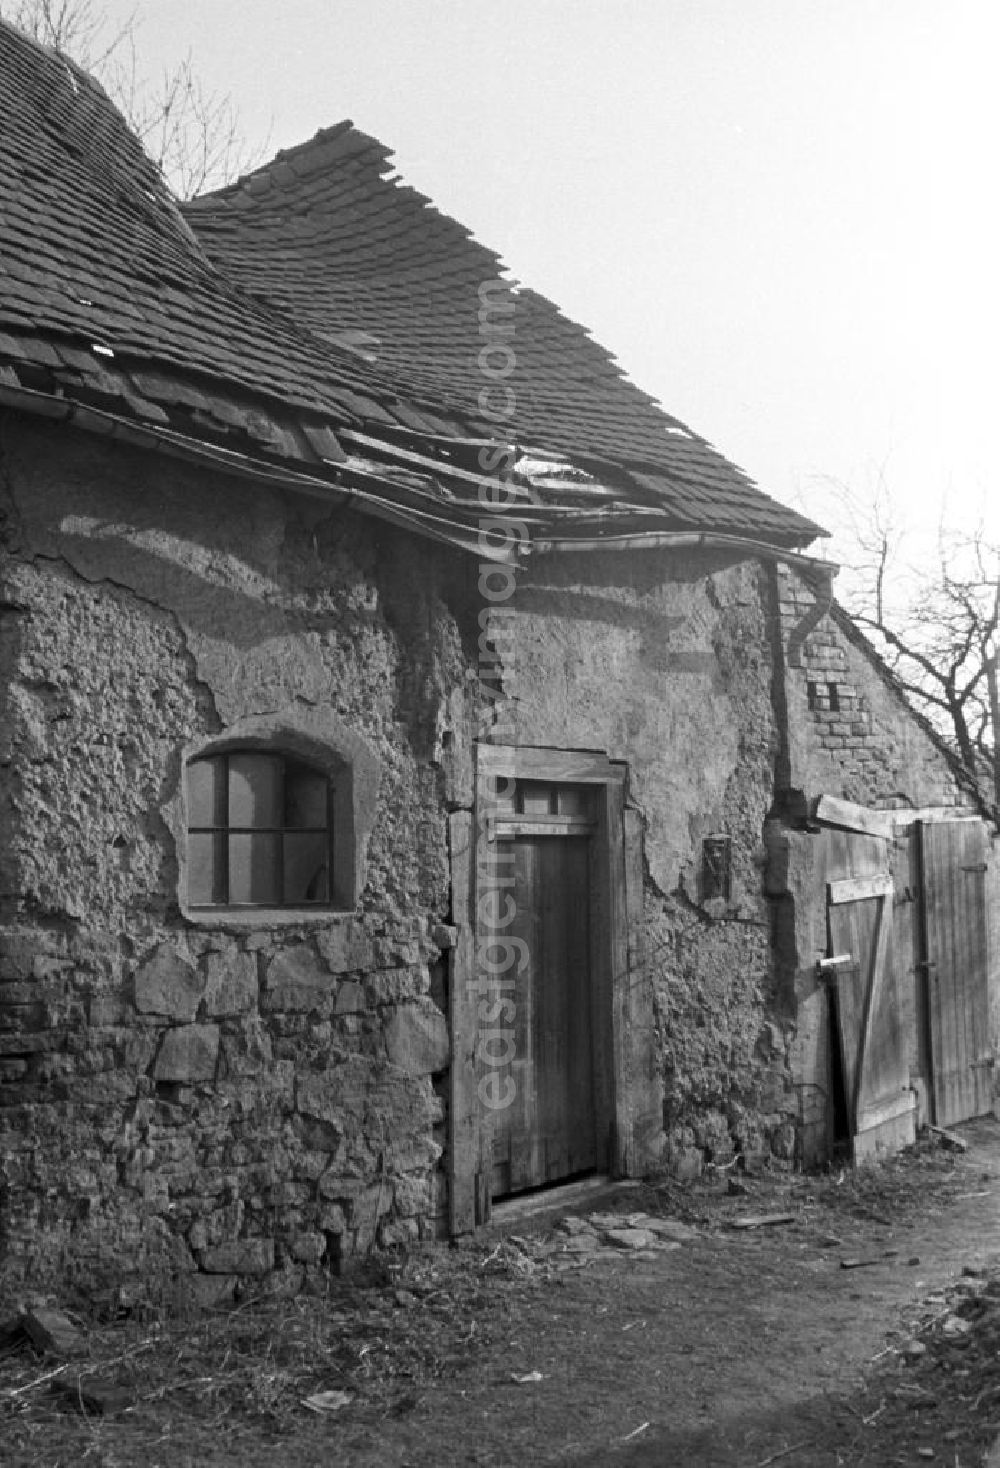 GDR image archive: Leipzig - Blick auf ein verfallenes Haus in einem Dorf bei Leipzig.